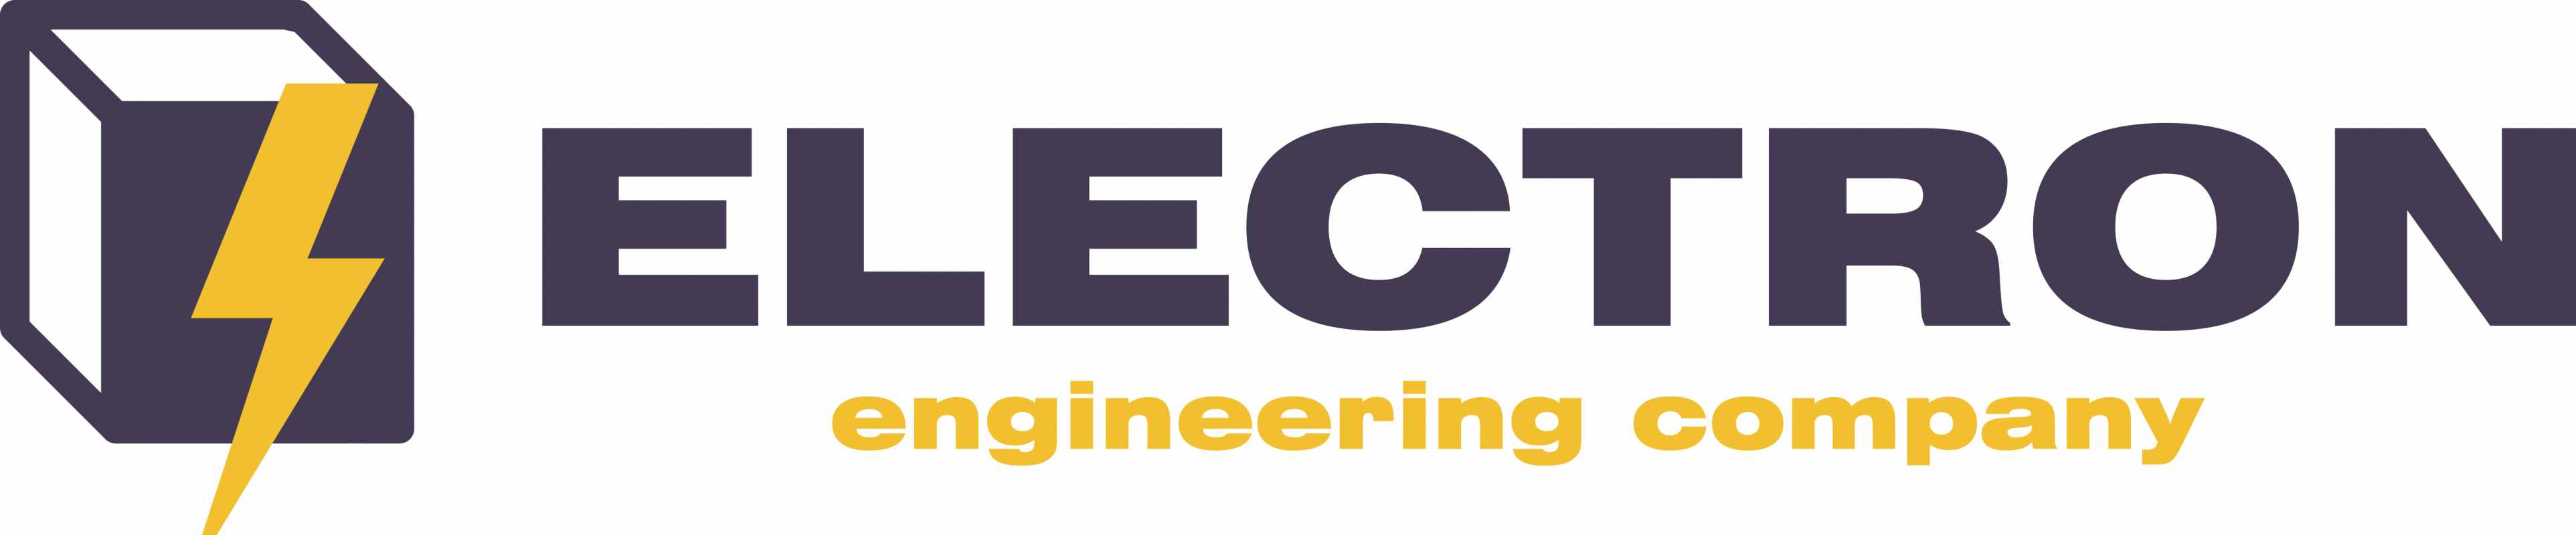 Инженерная компания Электрон: отзывы от сотрудников и партнеров